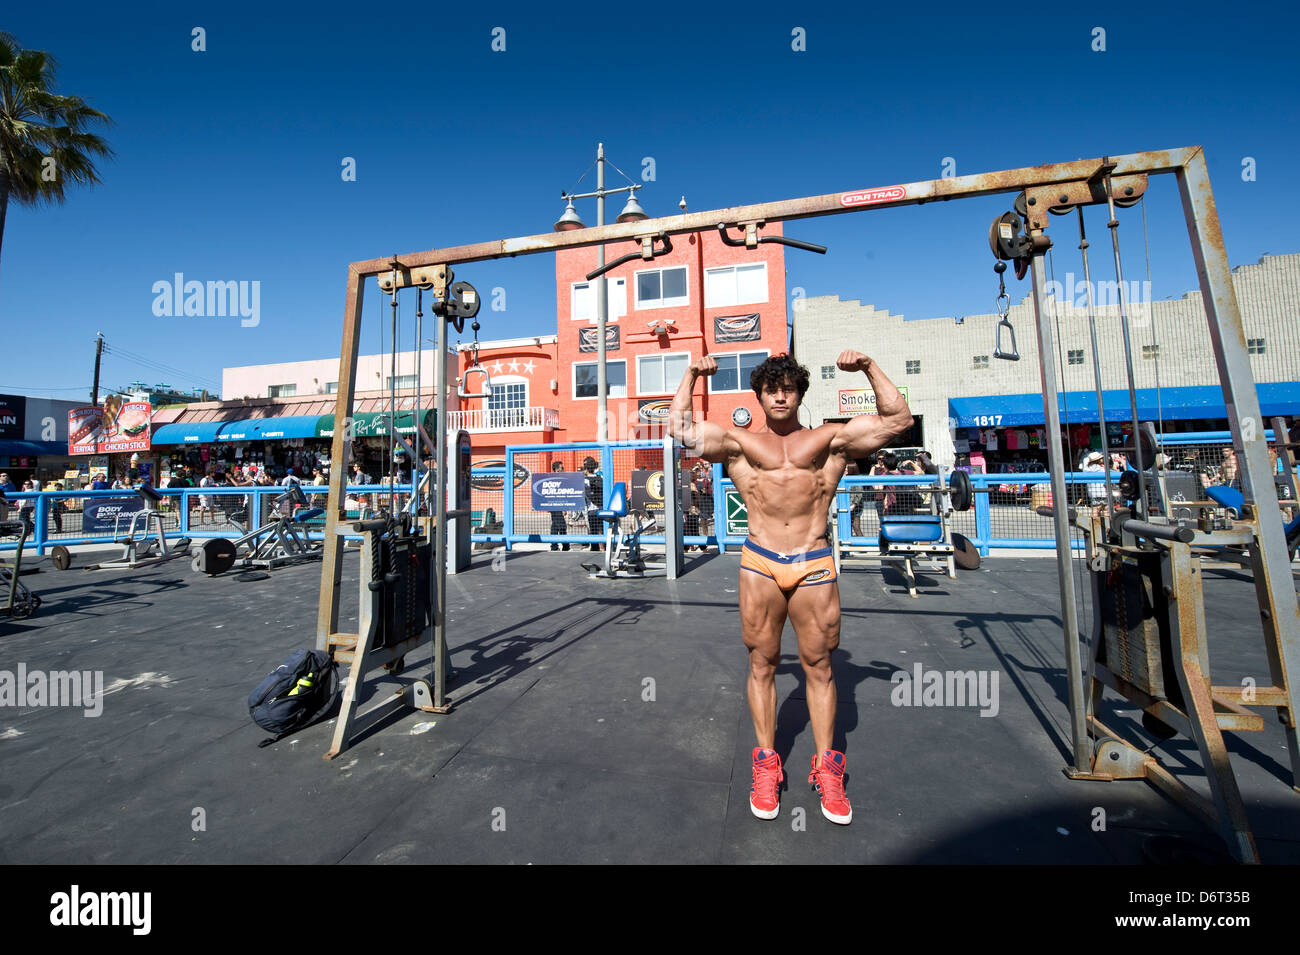 La spiaggia di Venezia, Santa Monica, California, Stati Uniti d'America: un culturista mette in mostra i suoi muscoli Foto Stock